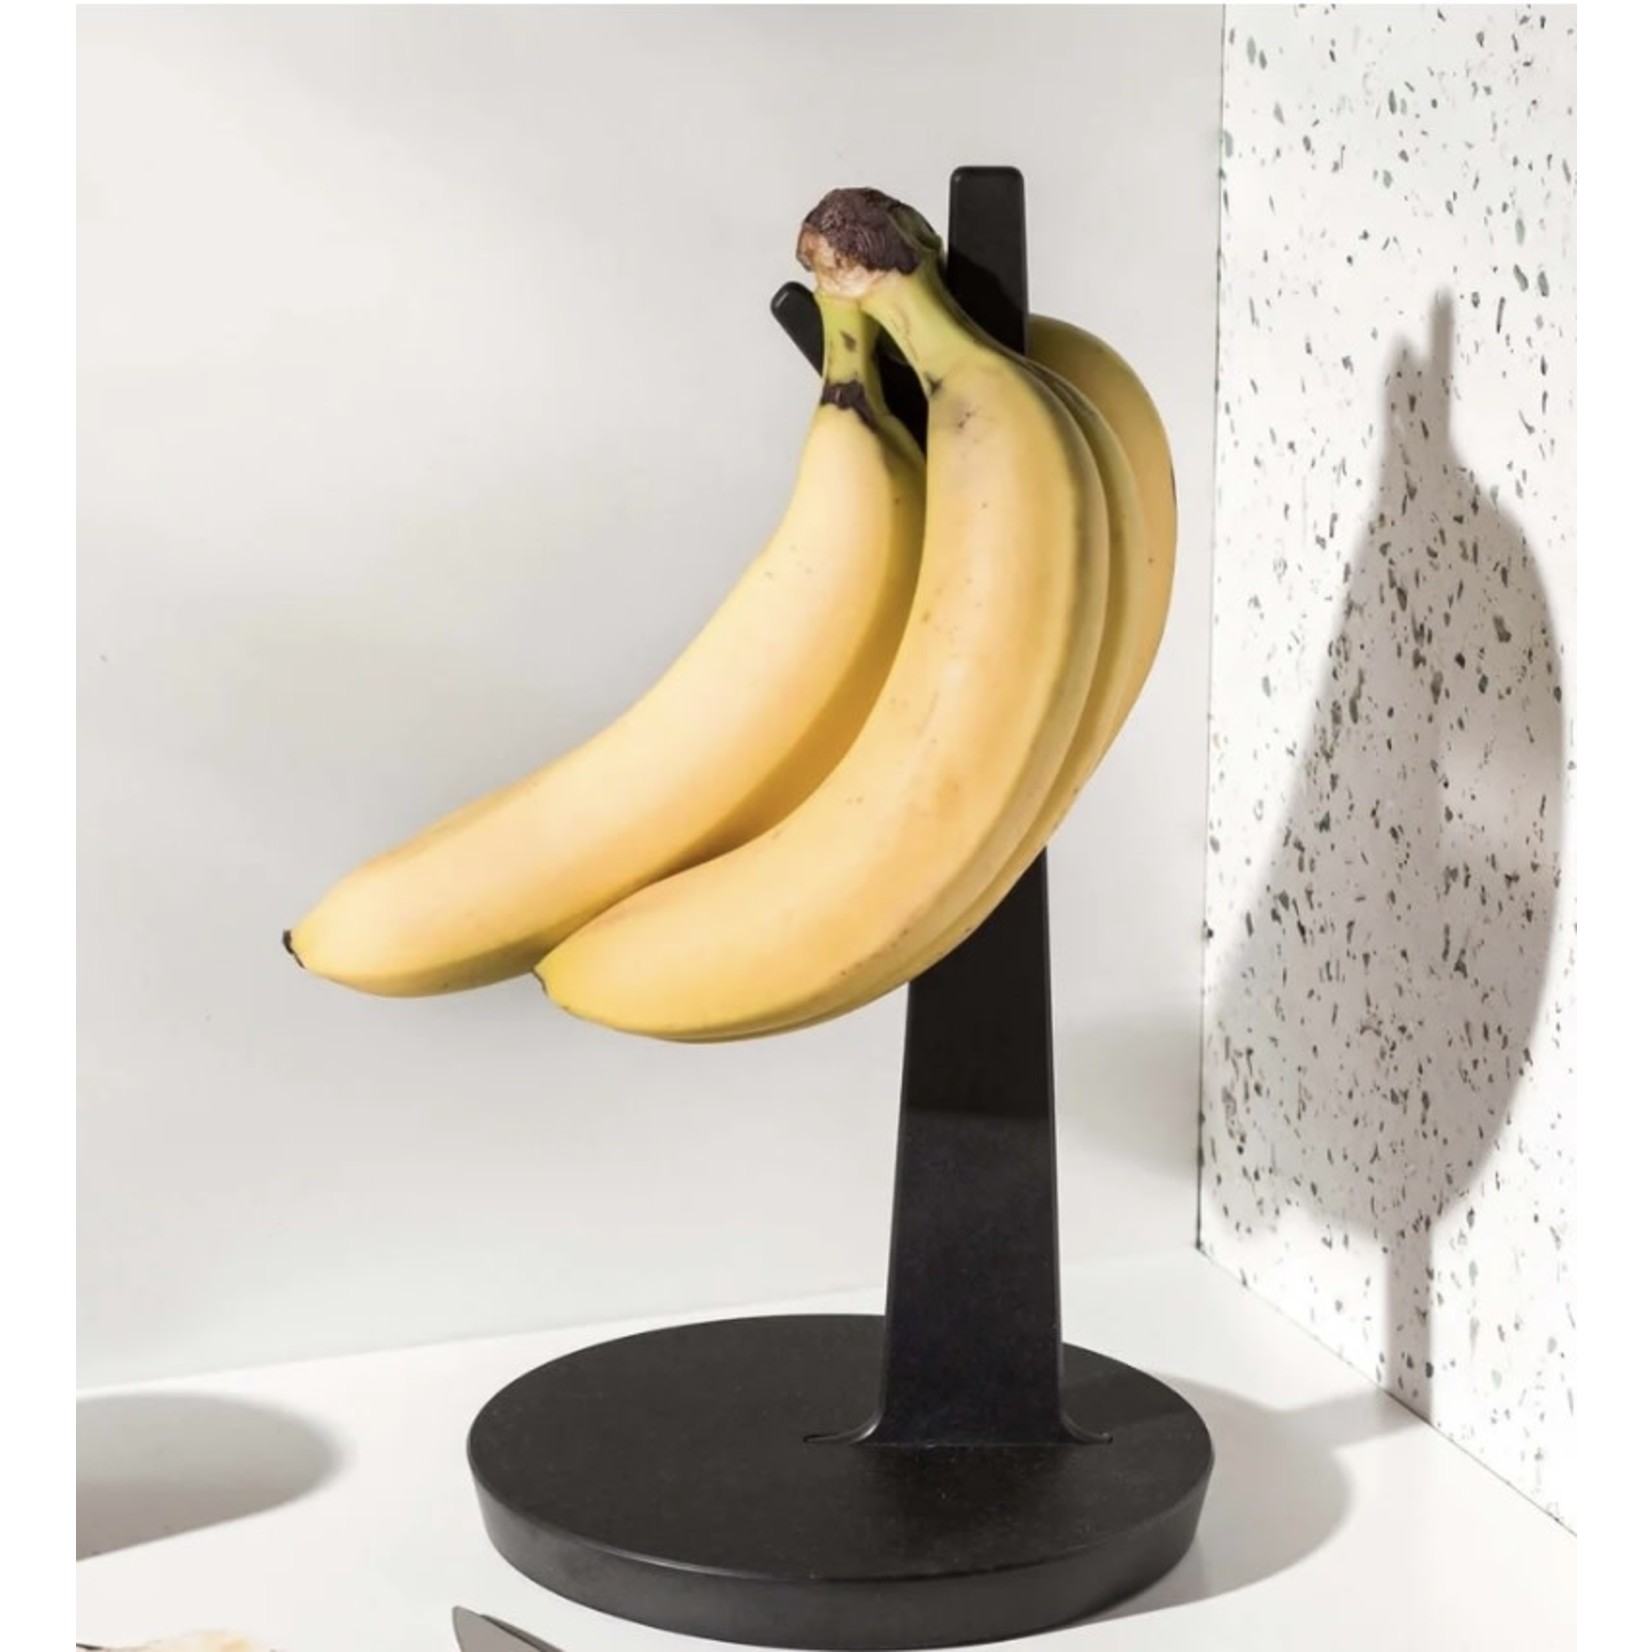 EPICUREAN EPICUREAN Banana Holder - Slate DNR